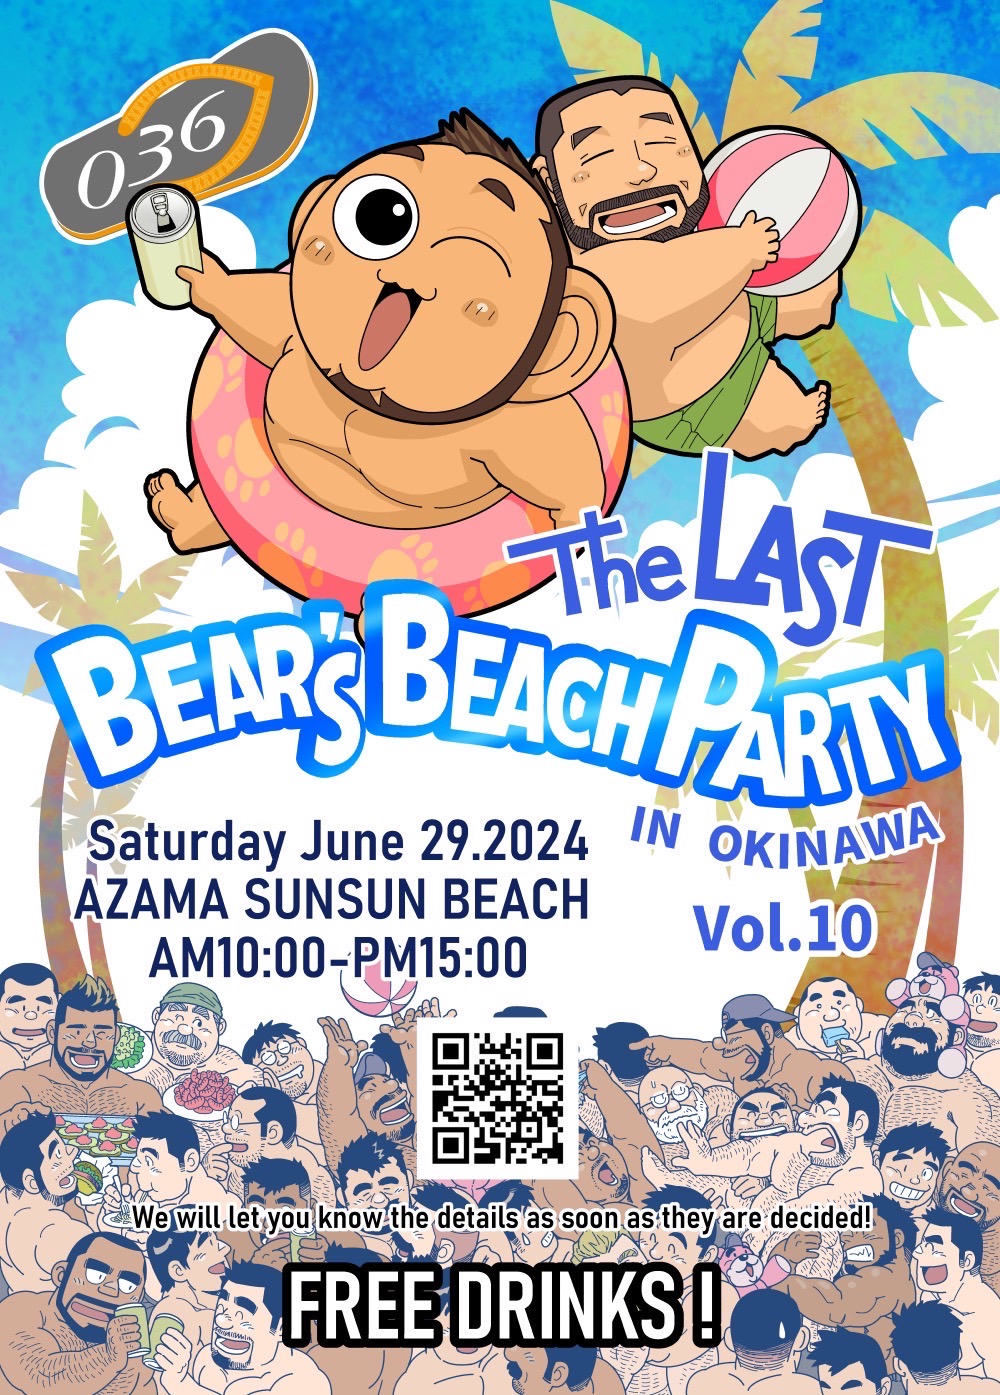 BEAR'S BEACH PARTY